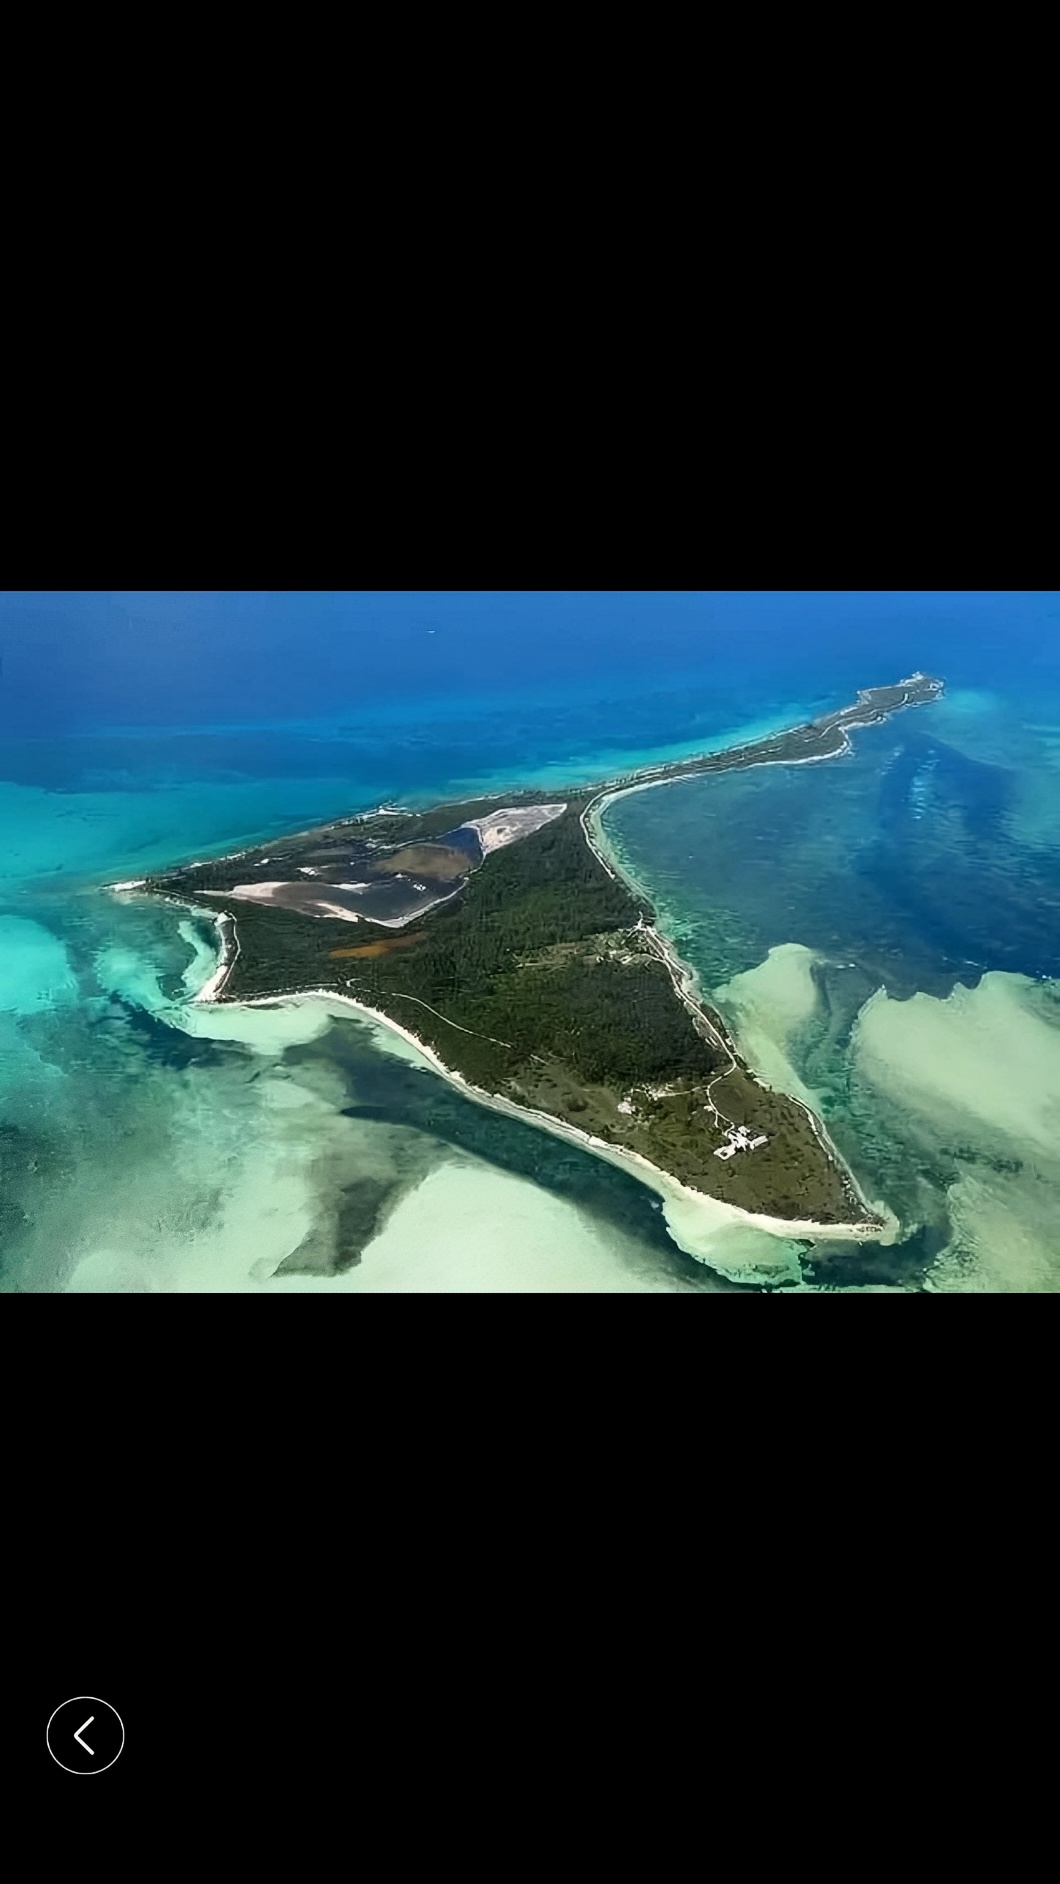 巴哈马的鱼形岛